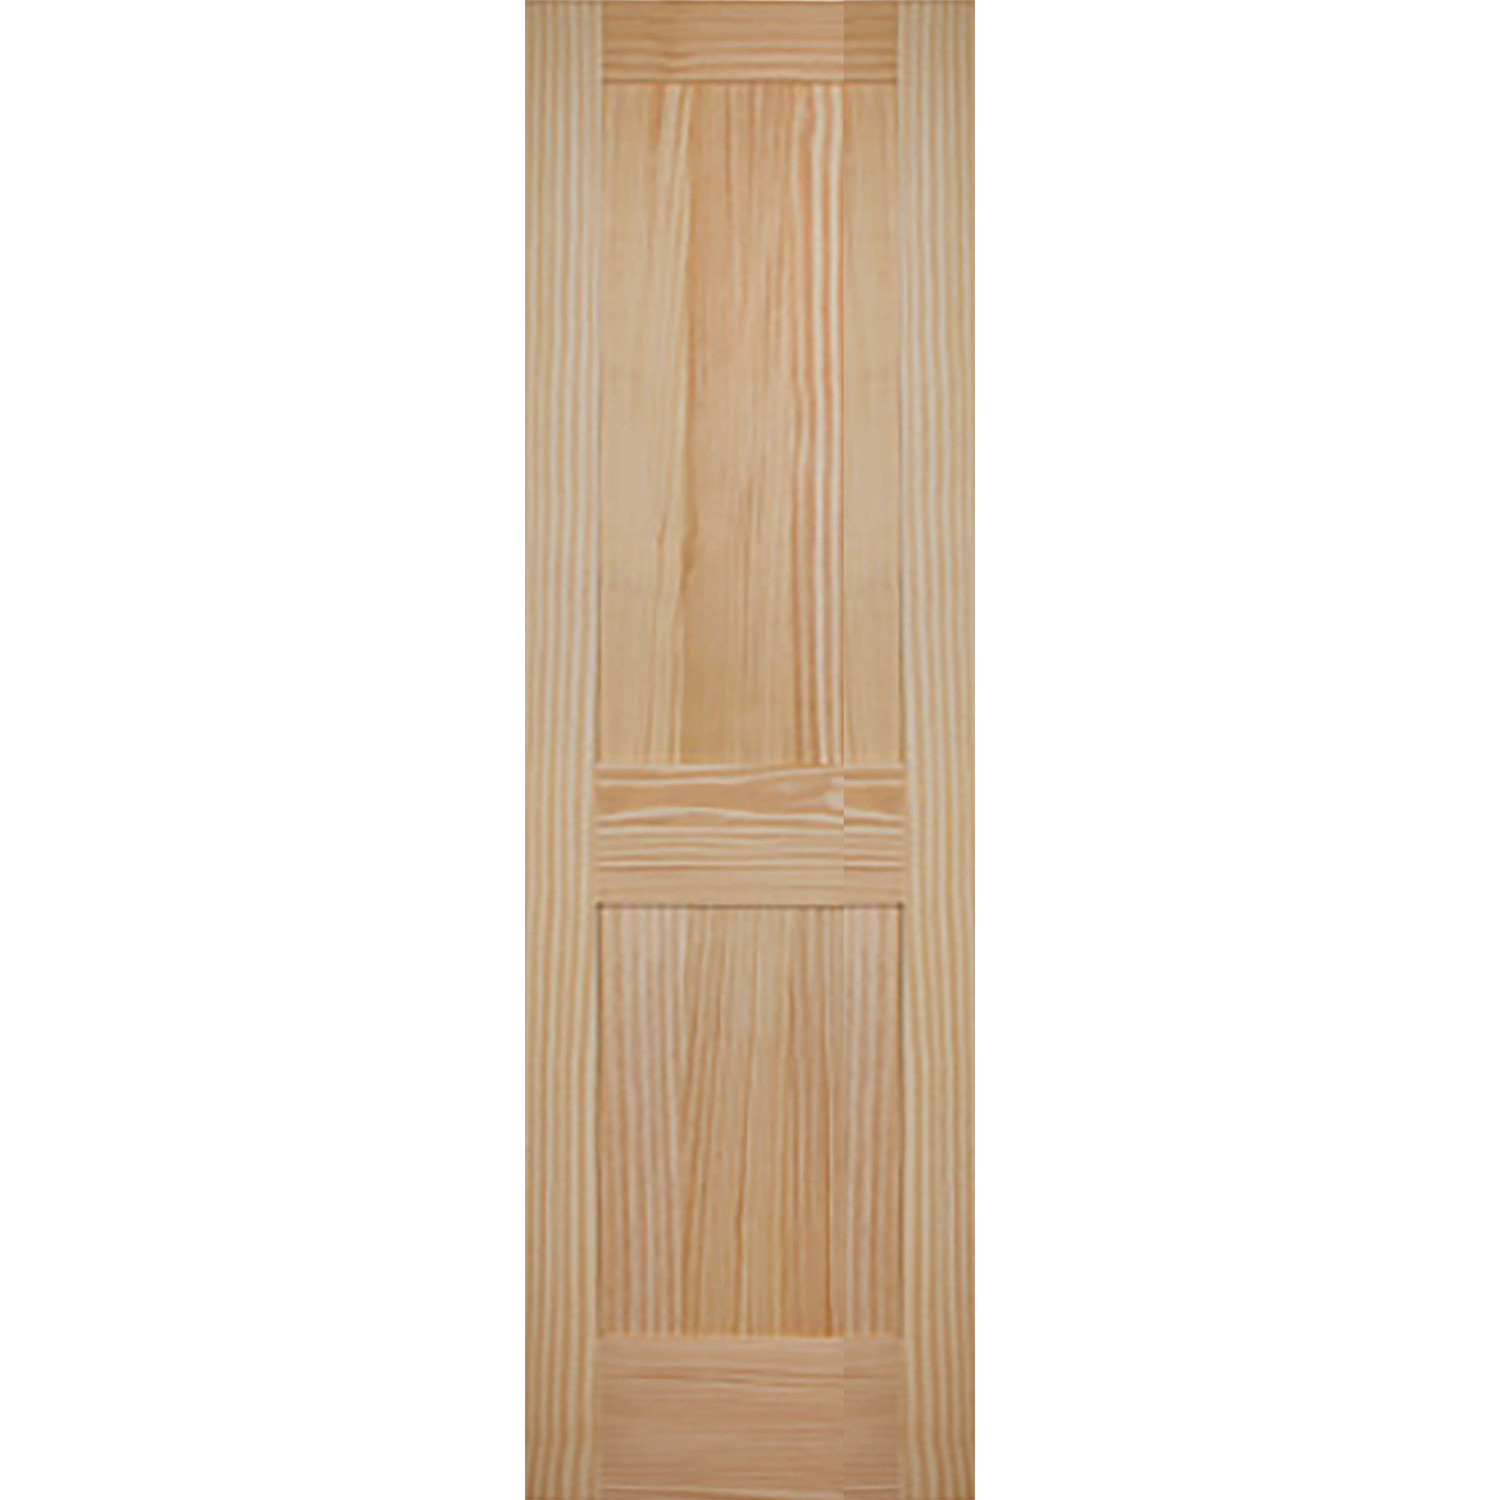 2 Panel 24 x 80 x 1 3/8 - Knotty Pine Door Shaker